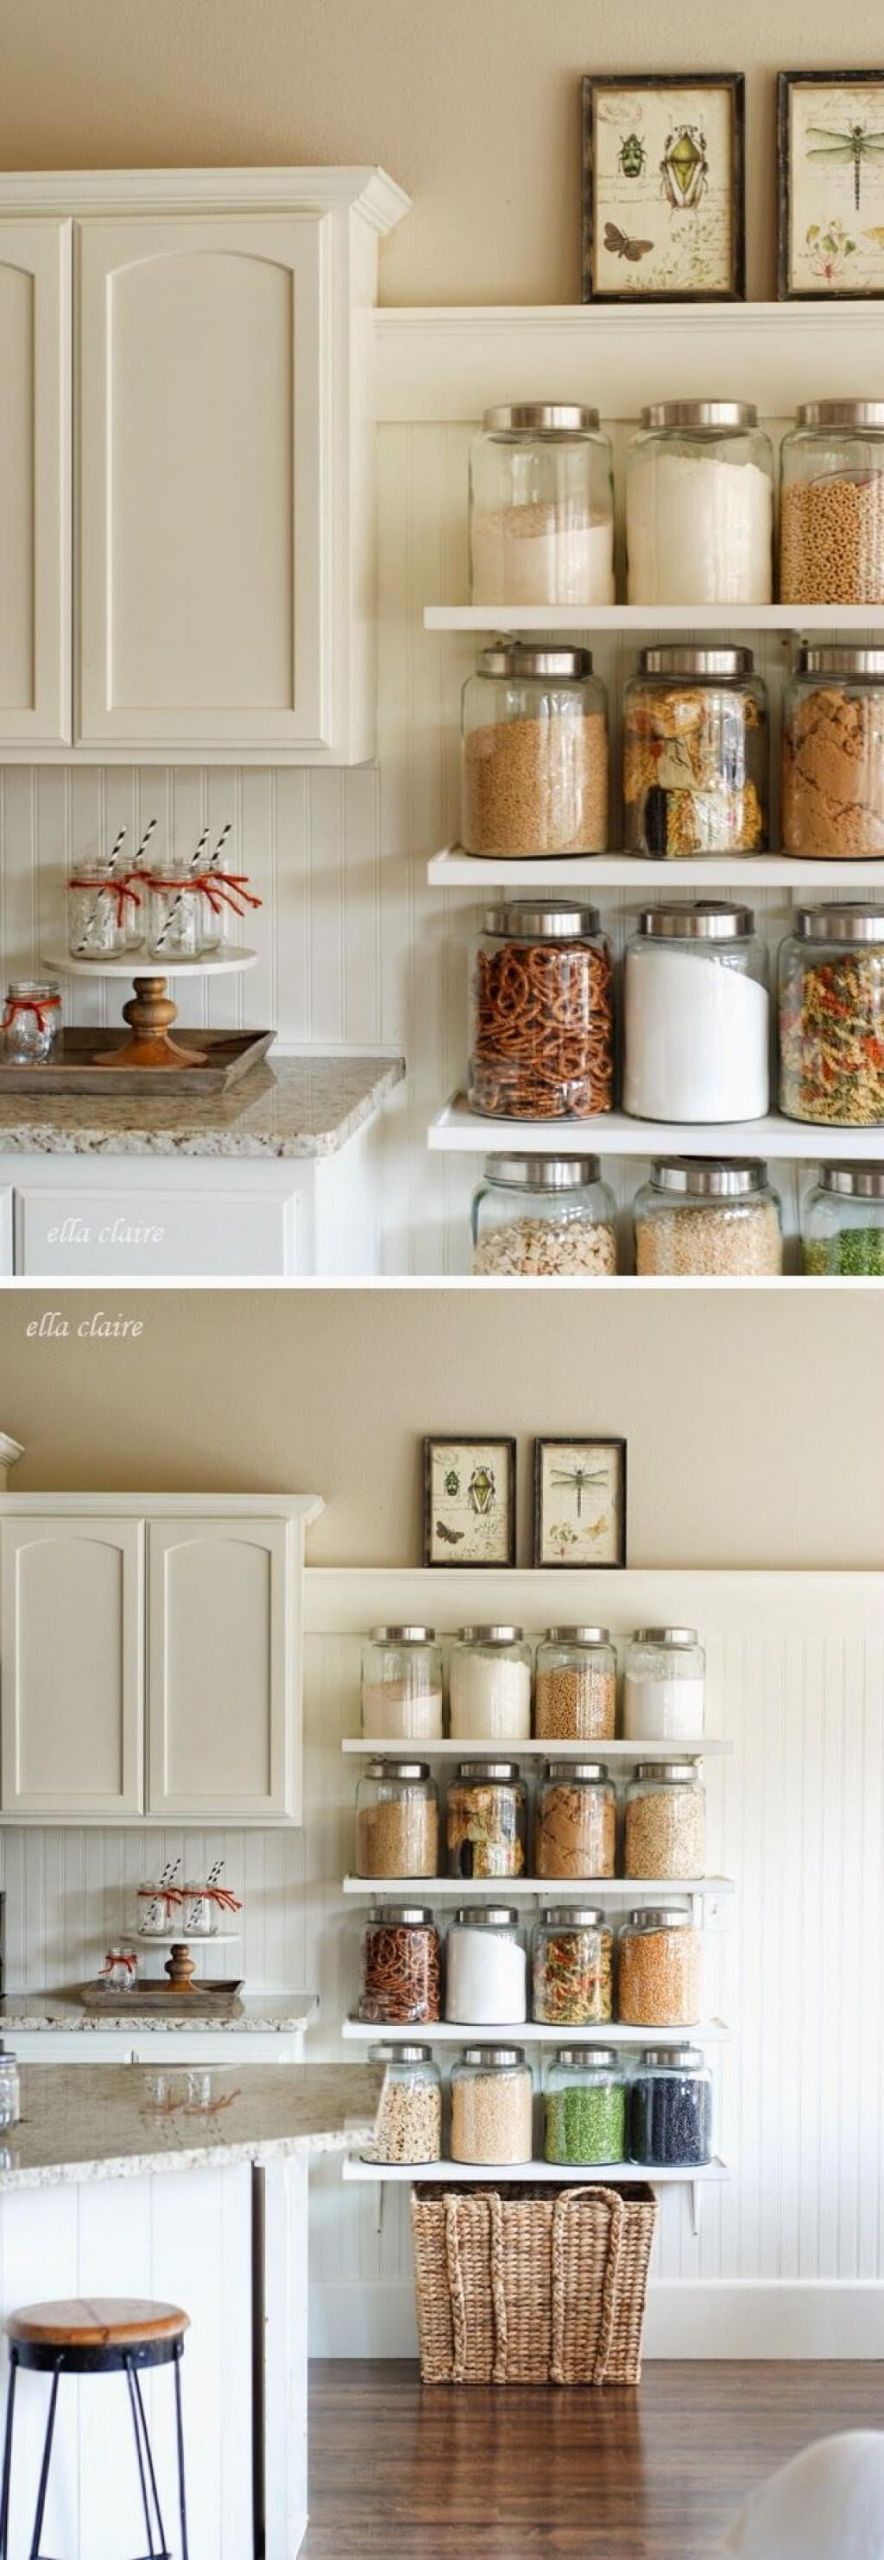 Kitchen Storage Tips
 35 Best Small Kitchen Storage Organization Ideas and